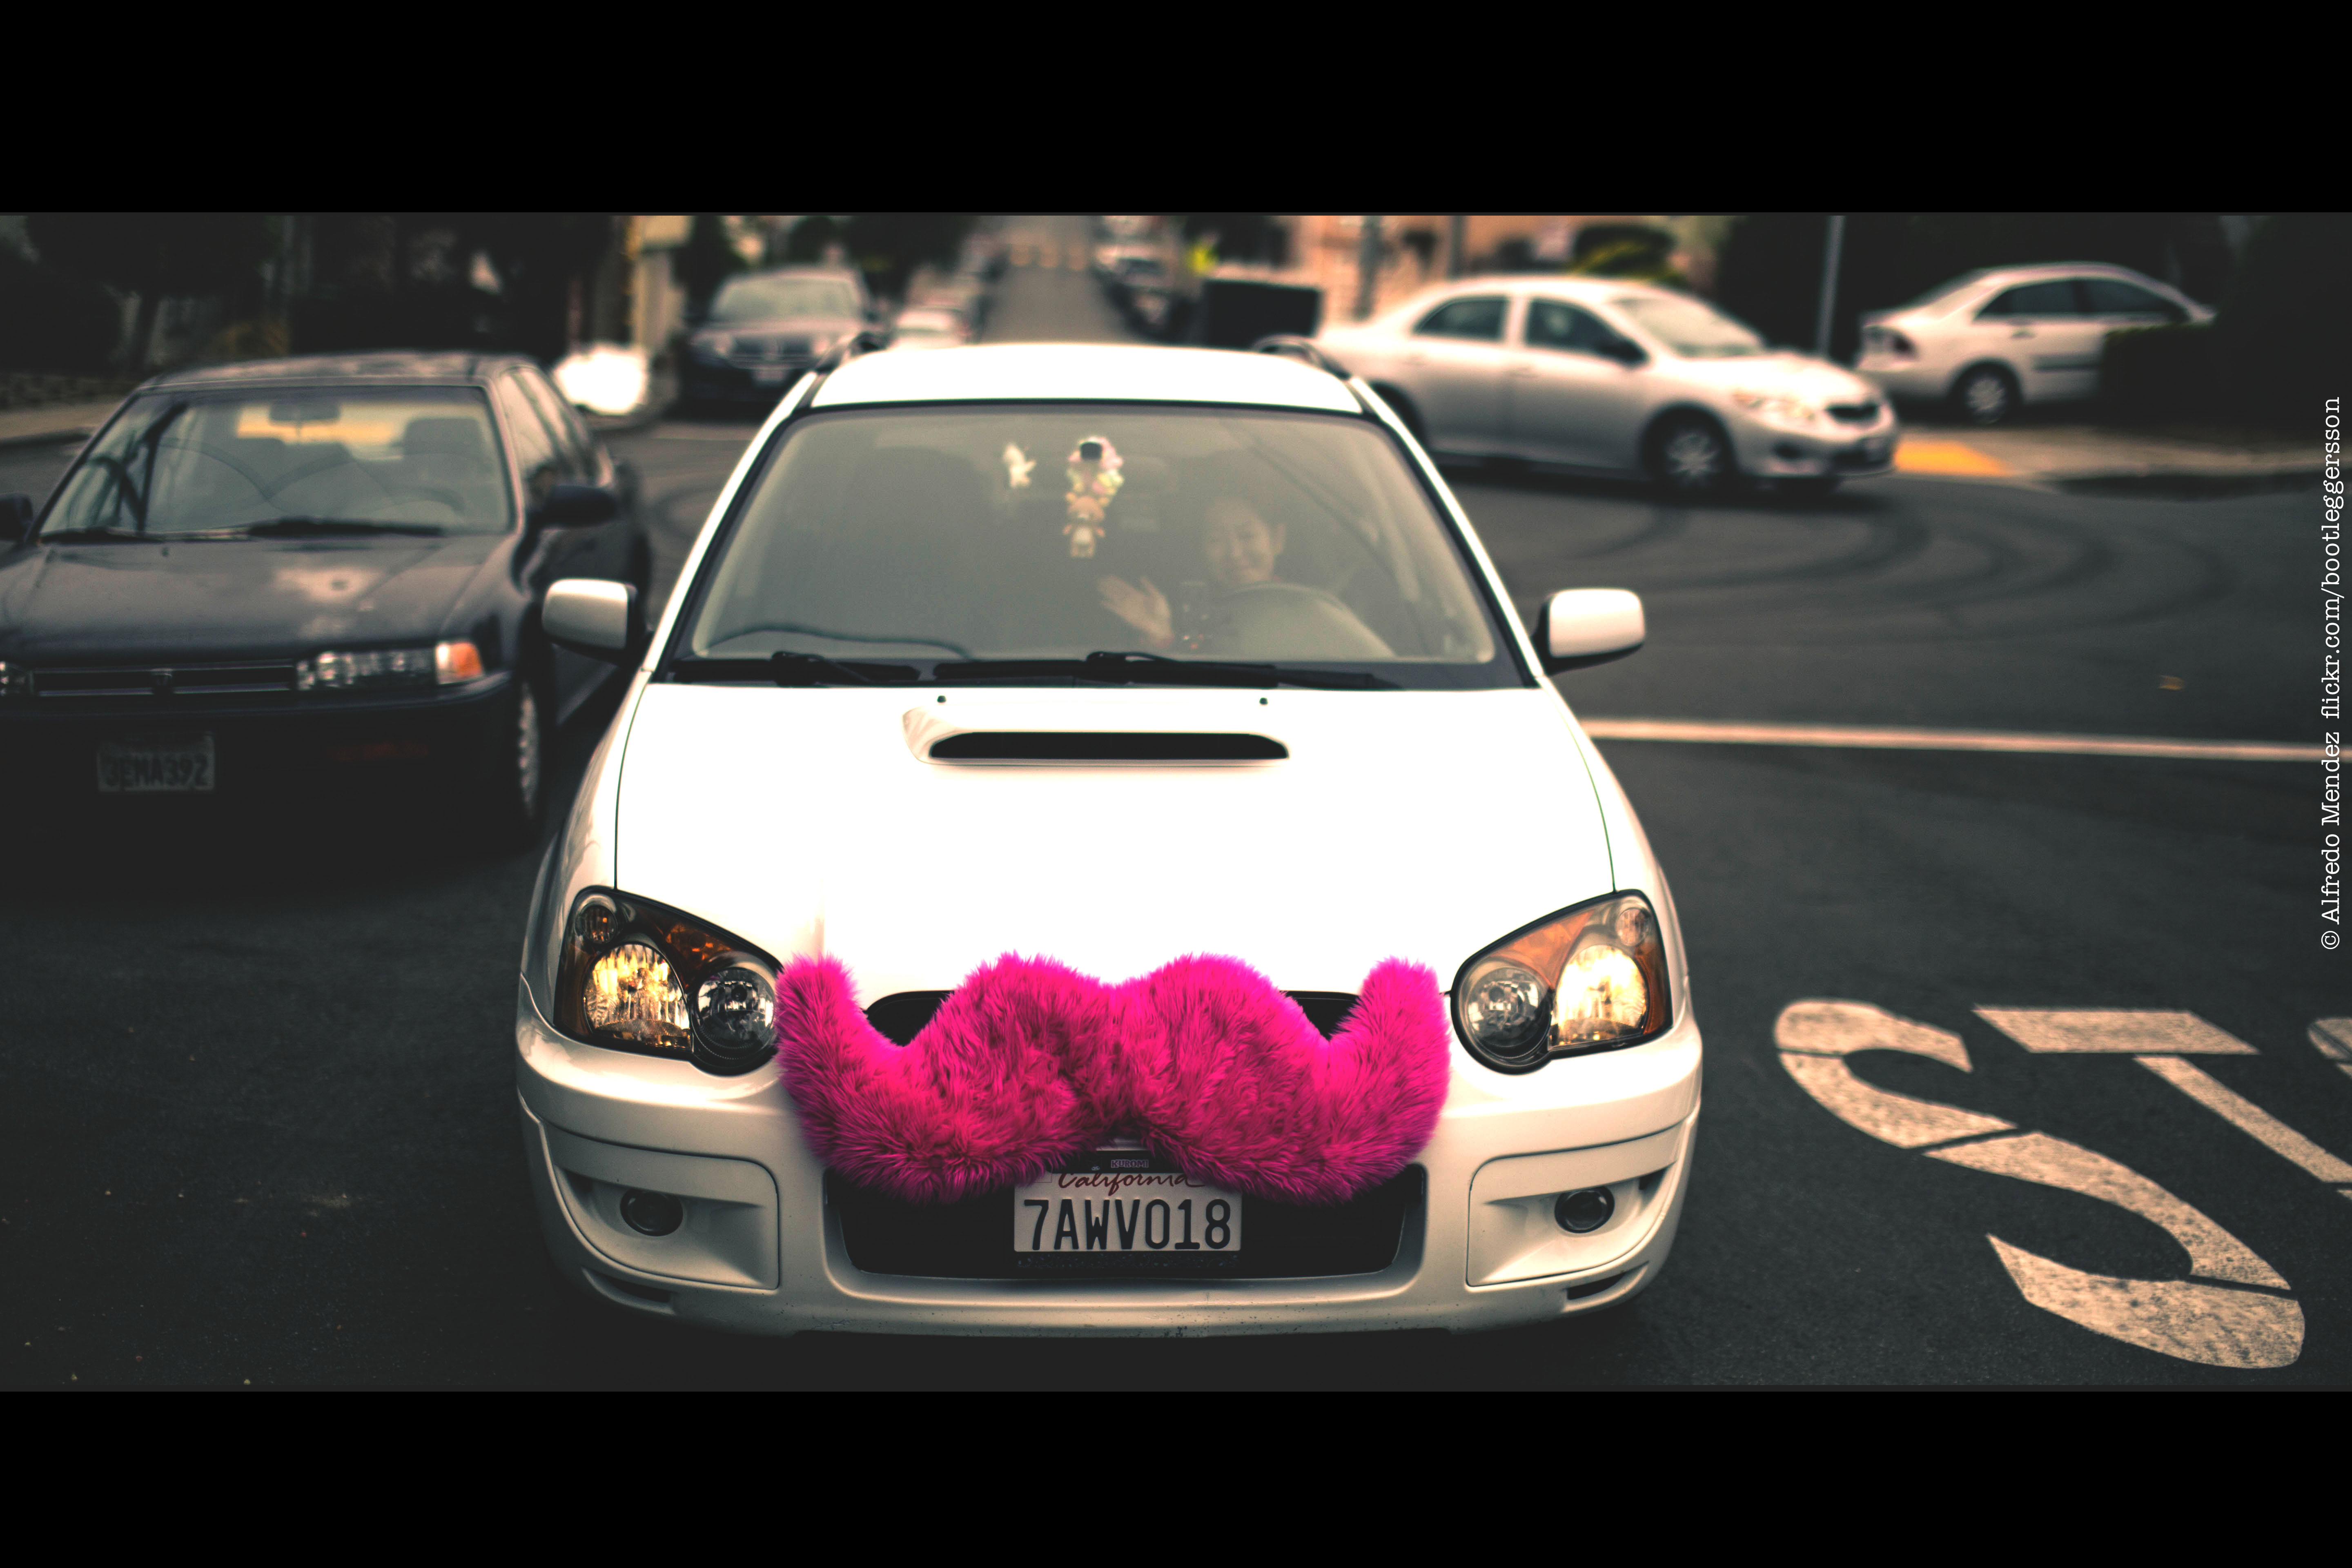 Uma fotografia mostra um carro com um bigode rosa grande, felpudo e preso à grade frontal do carro.